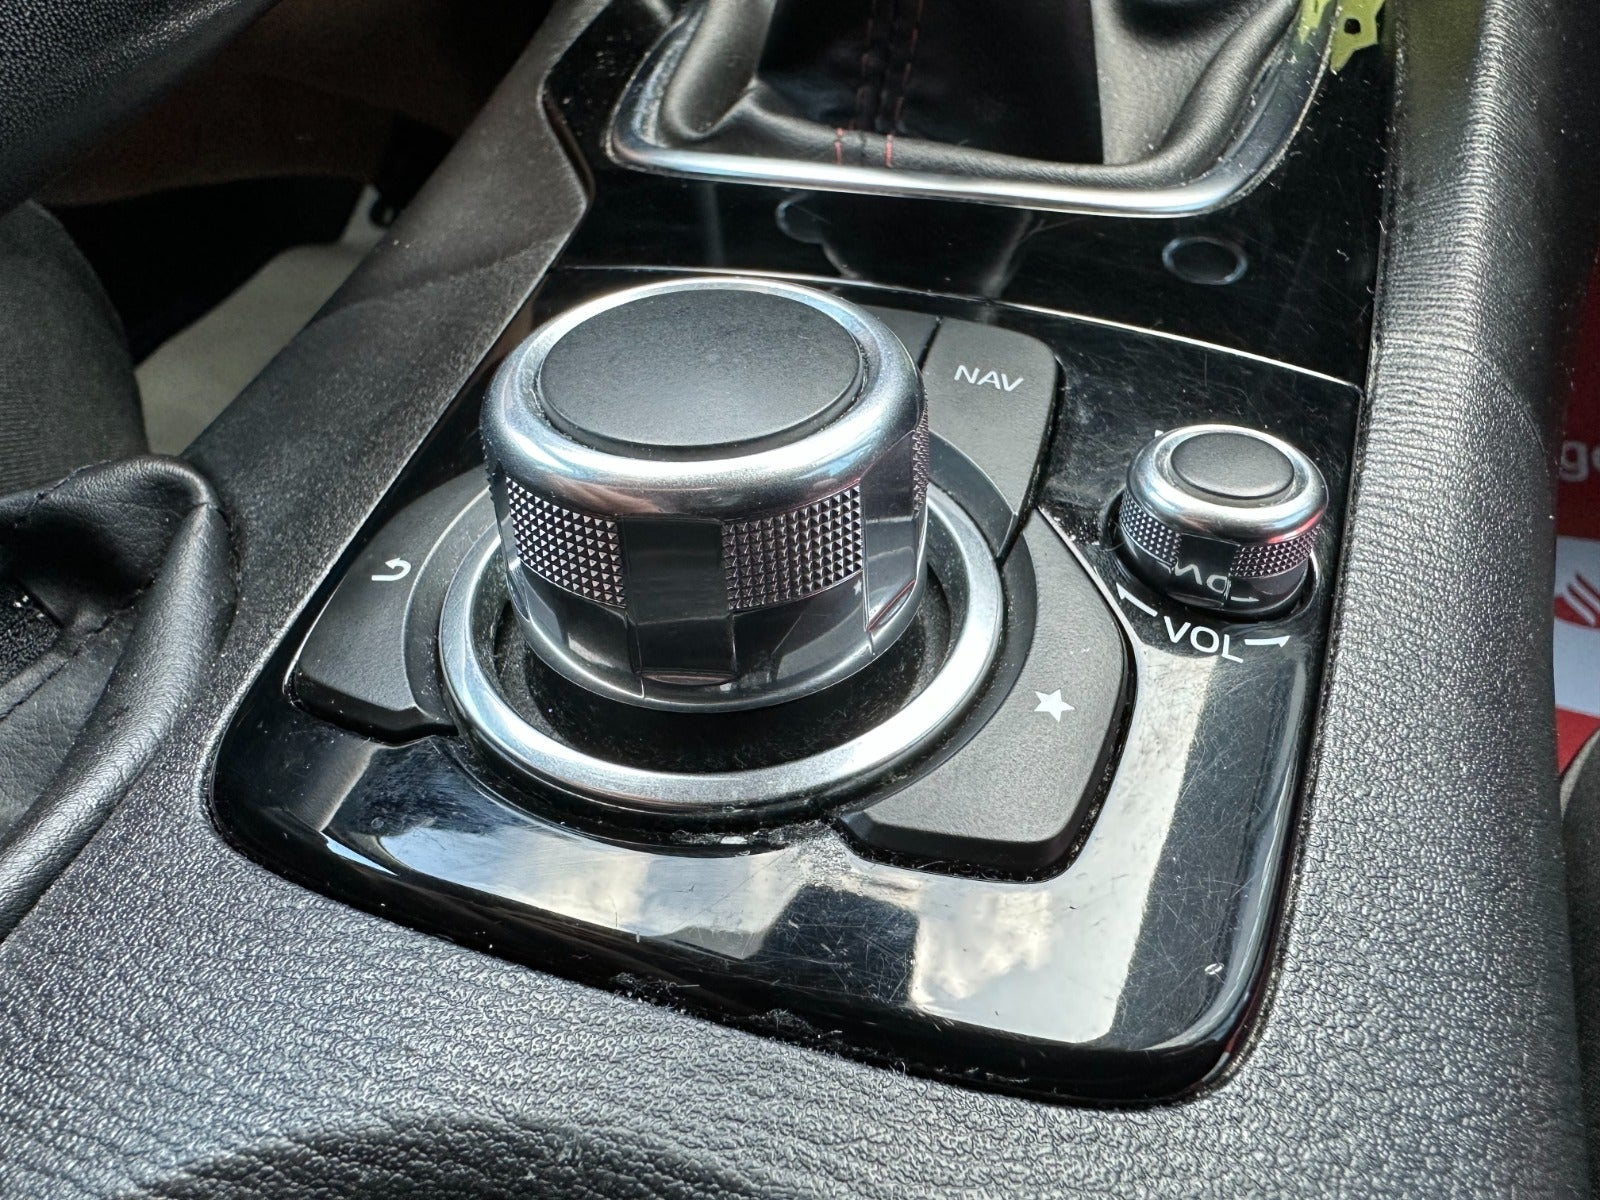 Mazda 3 2015